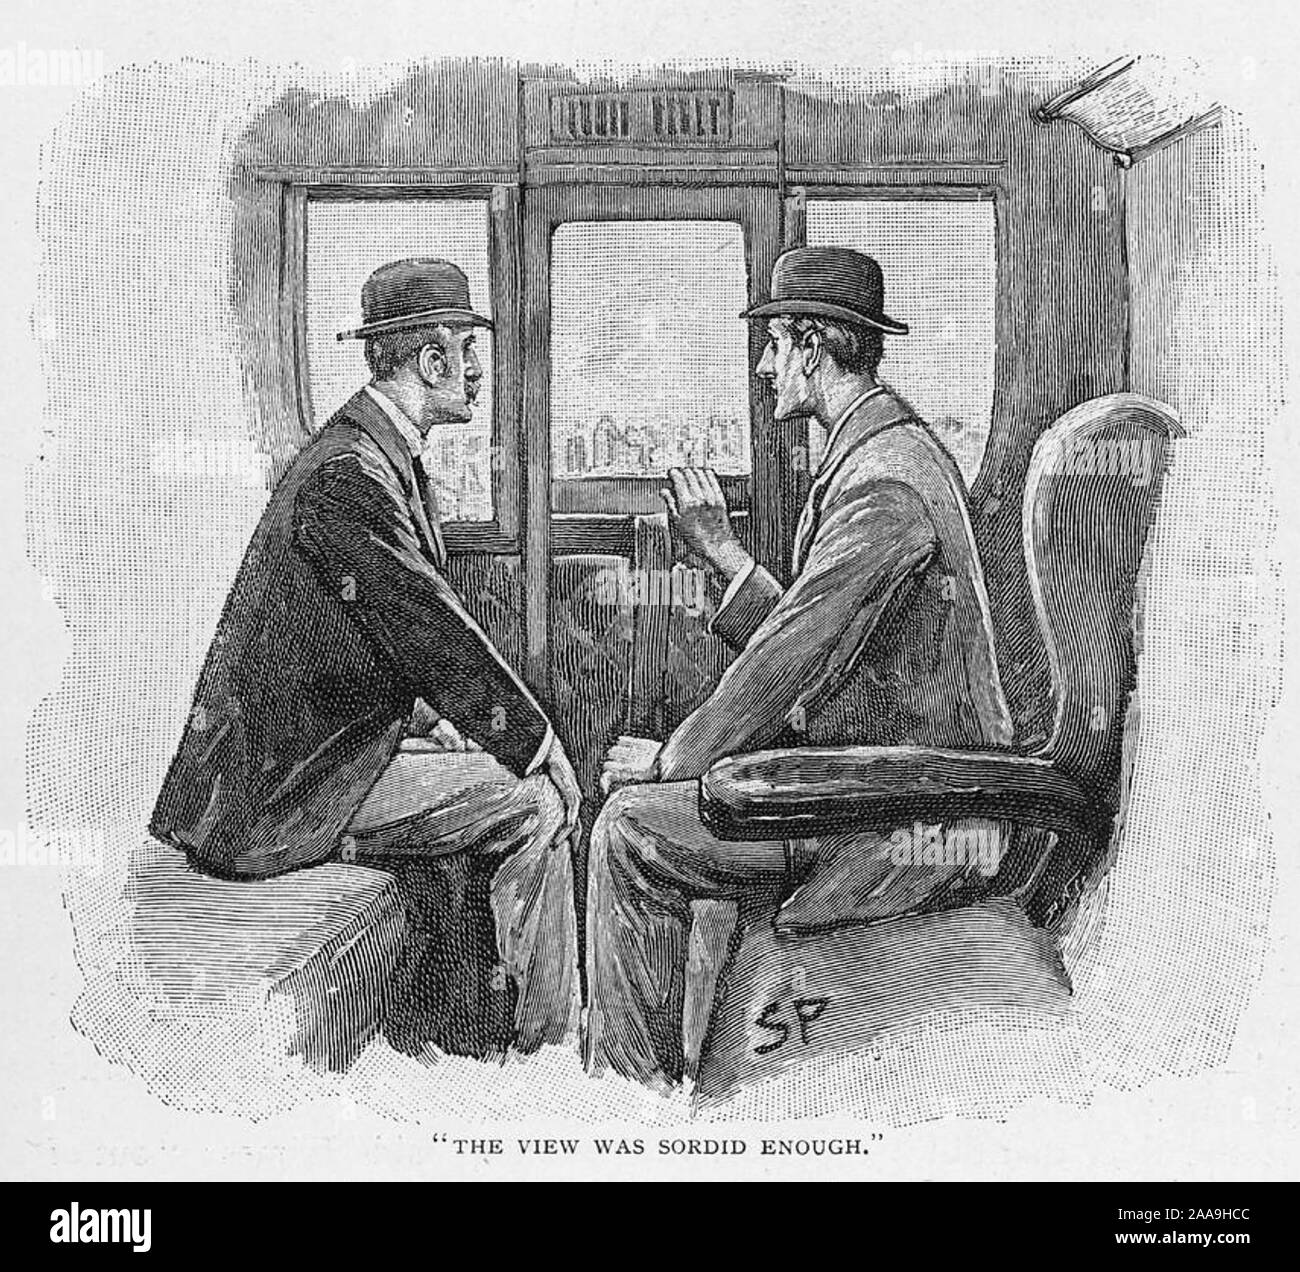 Die ABENTEUER DER NAVAL VERTRAG Abbildung für die 1893 kurze Geschichte über Sherlock Holmes von Arthur Conan Doyle. Holmes im rechten mit Dr. Watson. Stockfoto